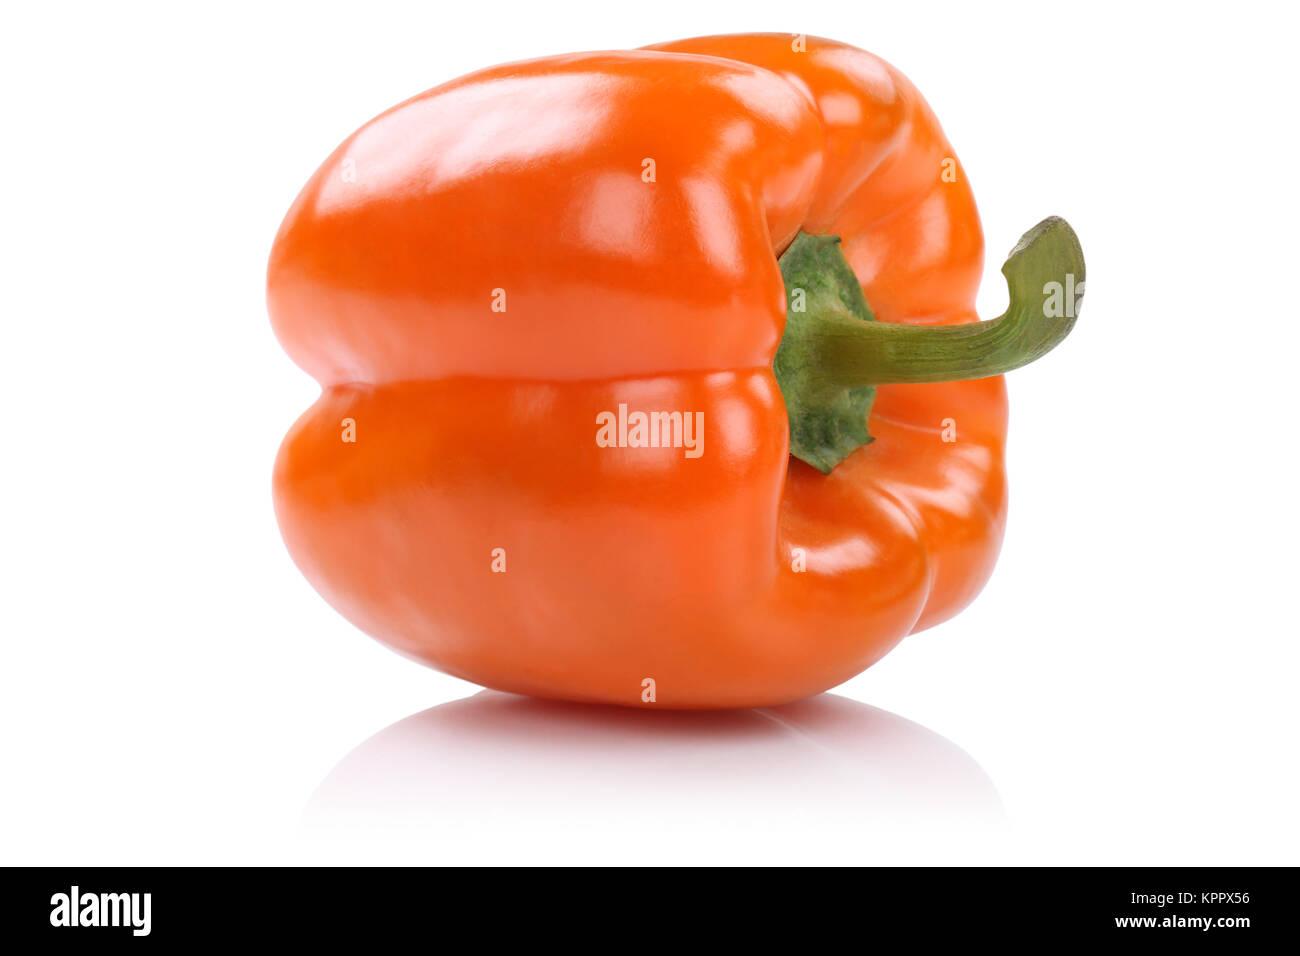 Paprika orange Gemüse Freisteller freigestellt isoliert vor einem weissen Hintergrund Stock Photo